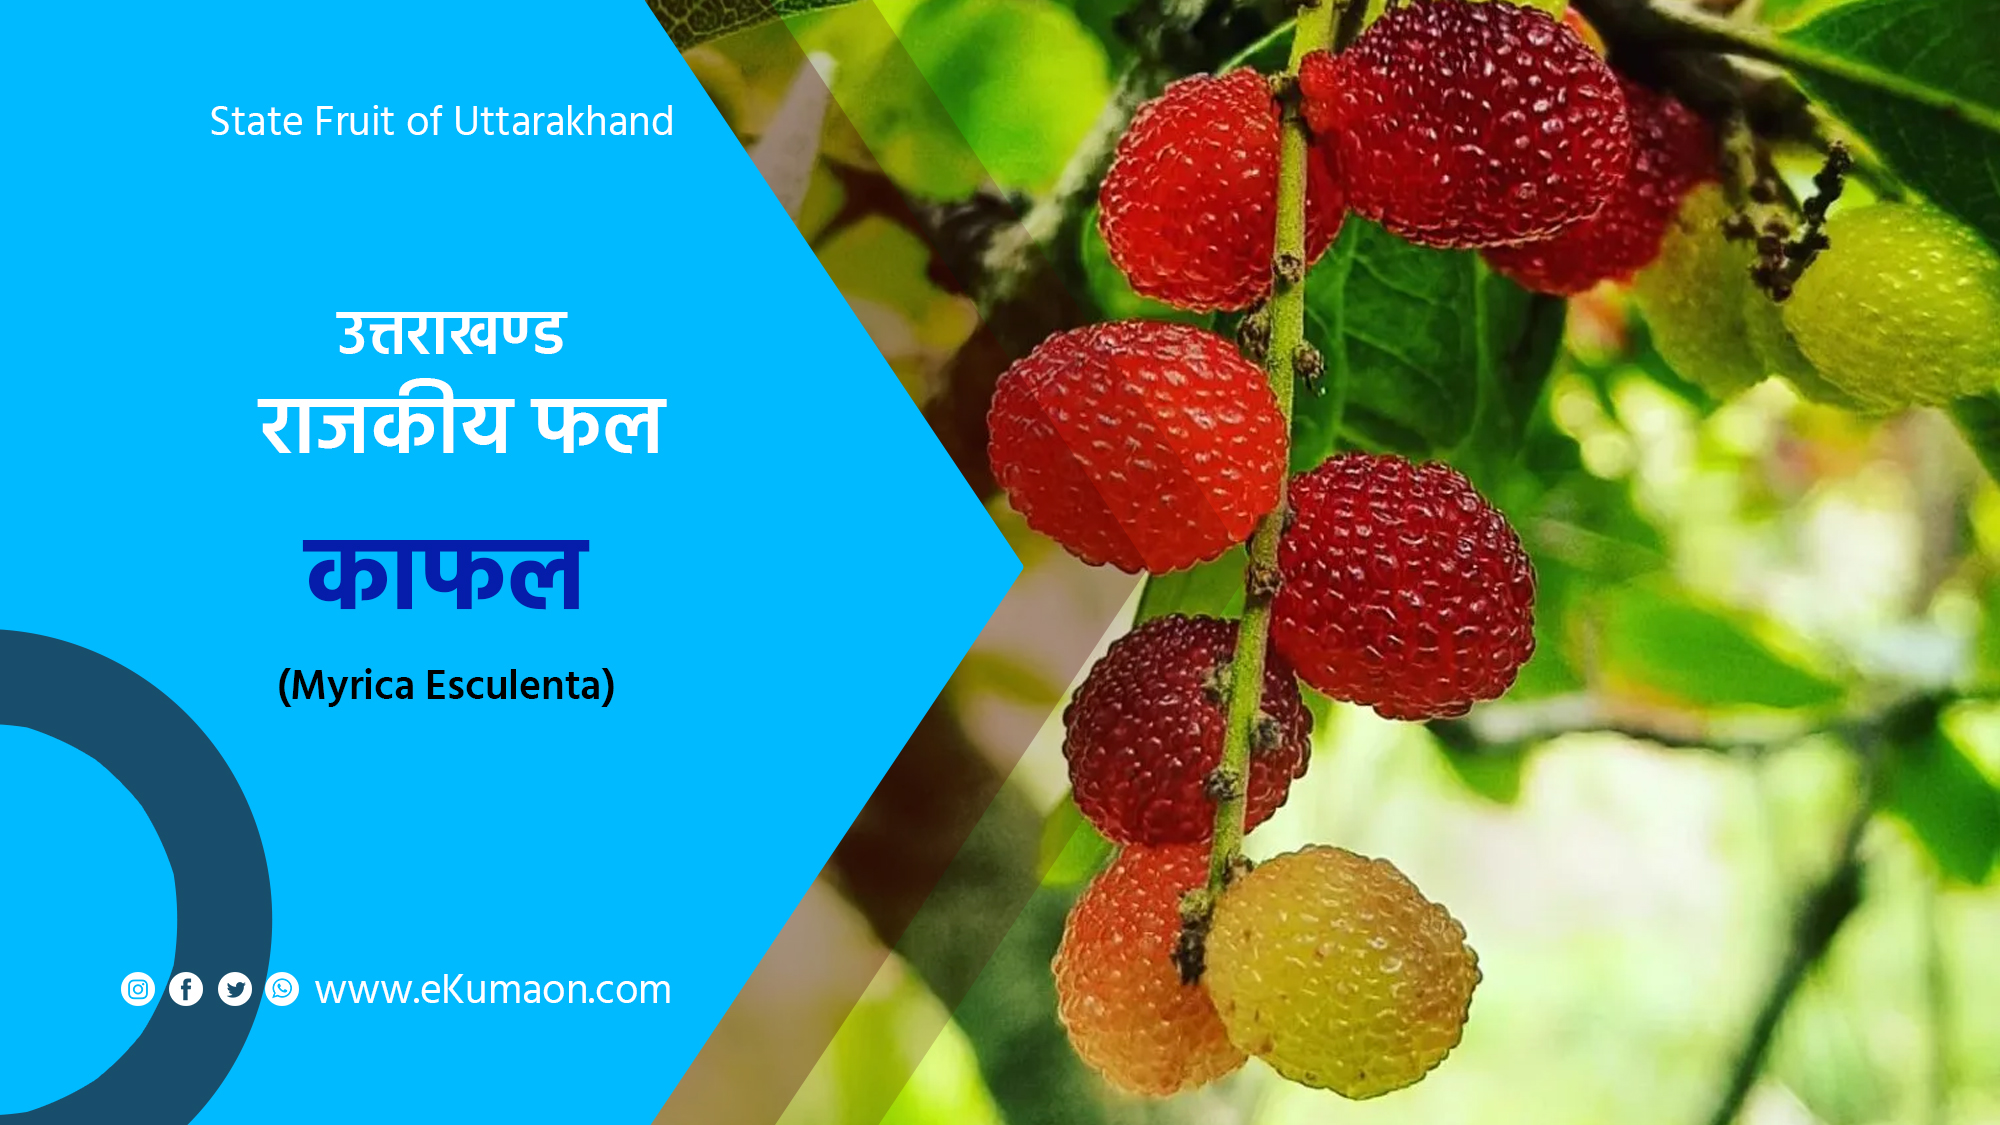 State Fruit of Uttarakhand